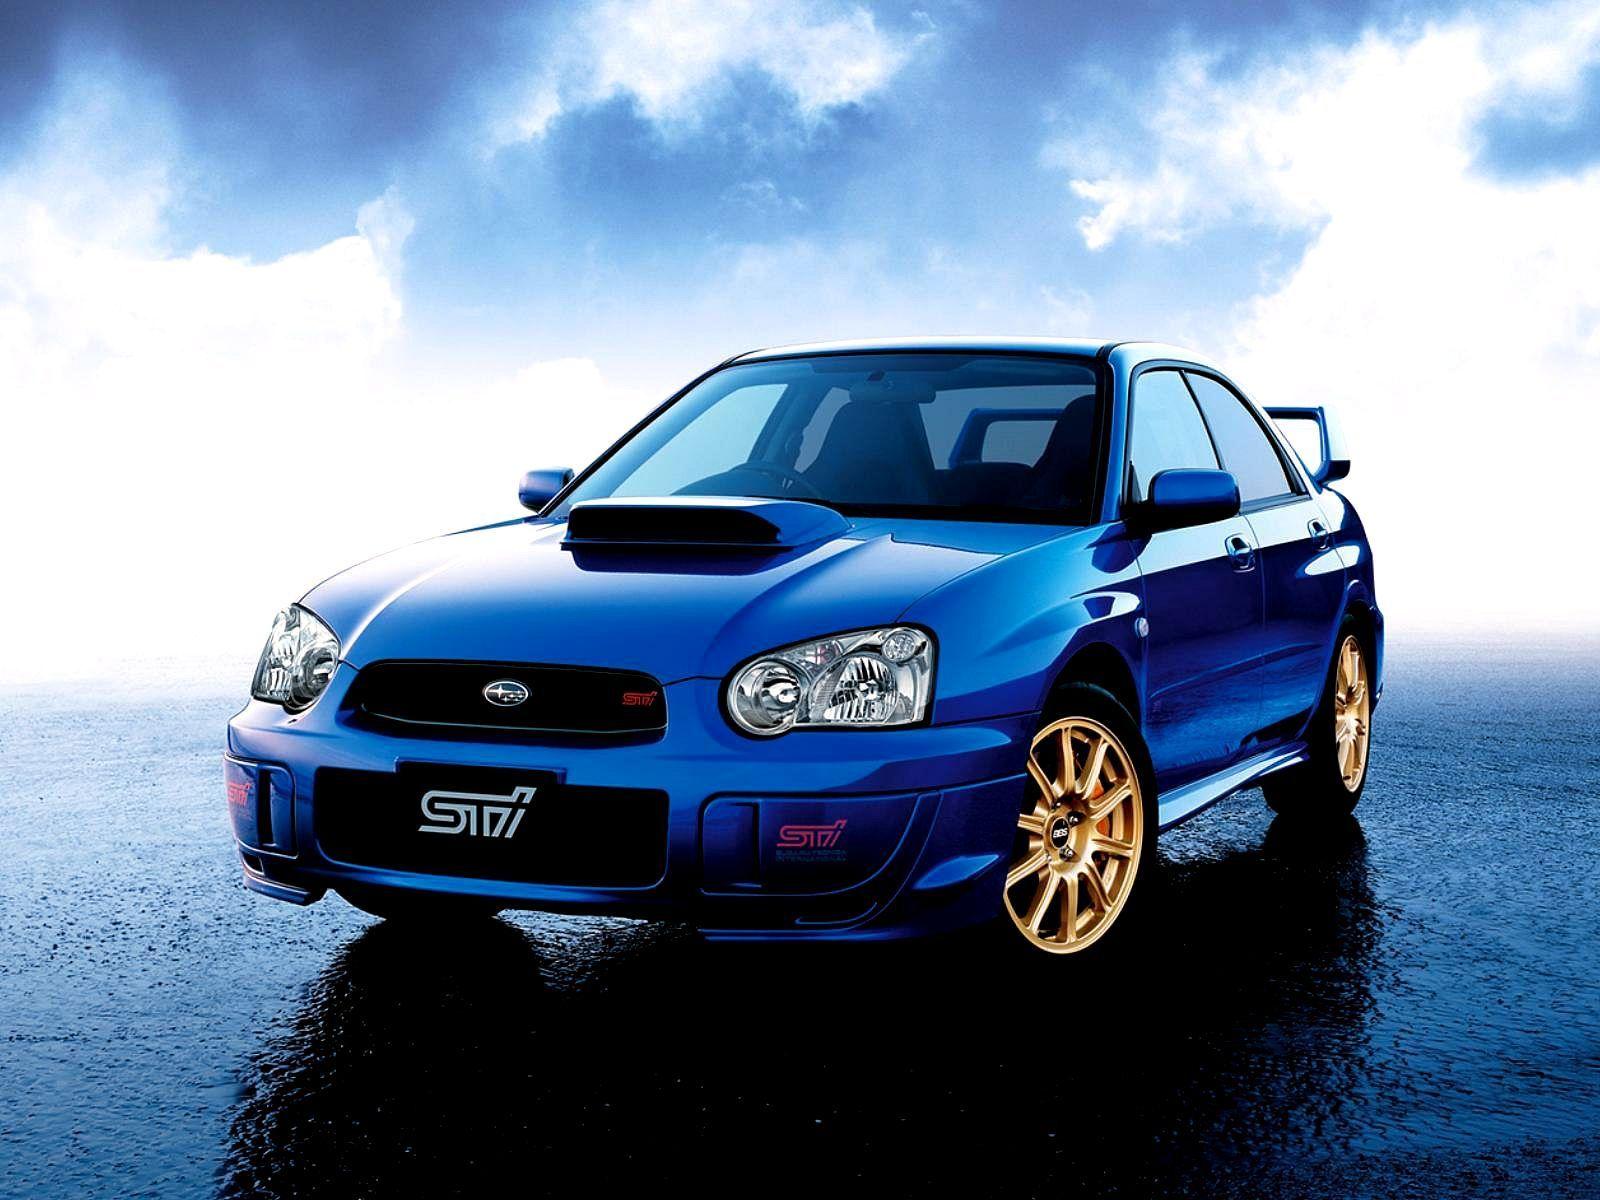 Subaru Impreza Wallpaper. HD Wallpaper Base. Impreza wrx